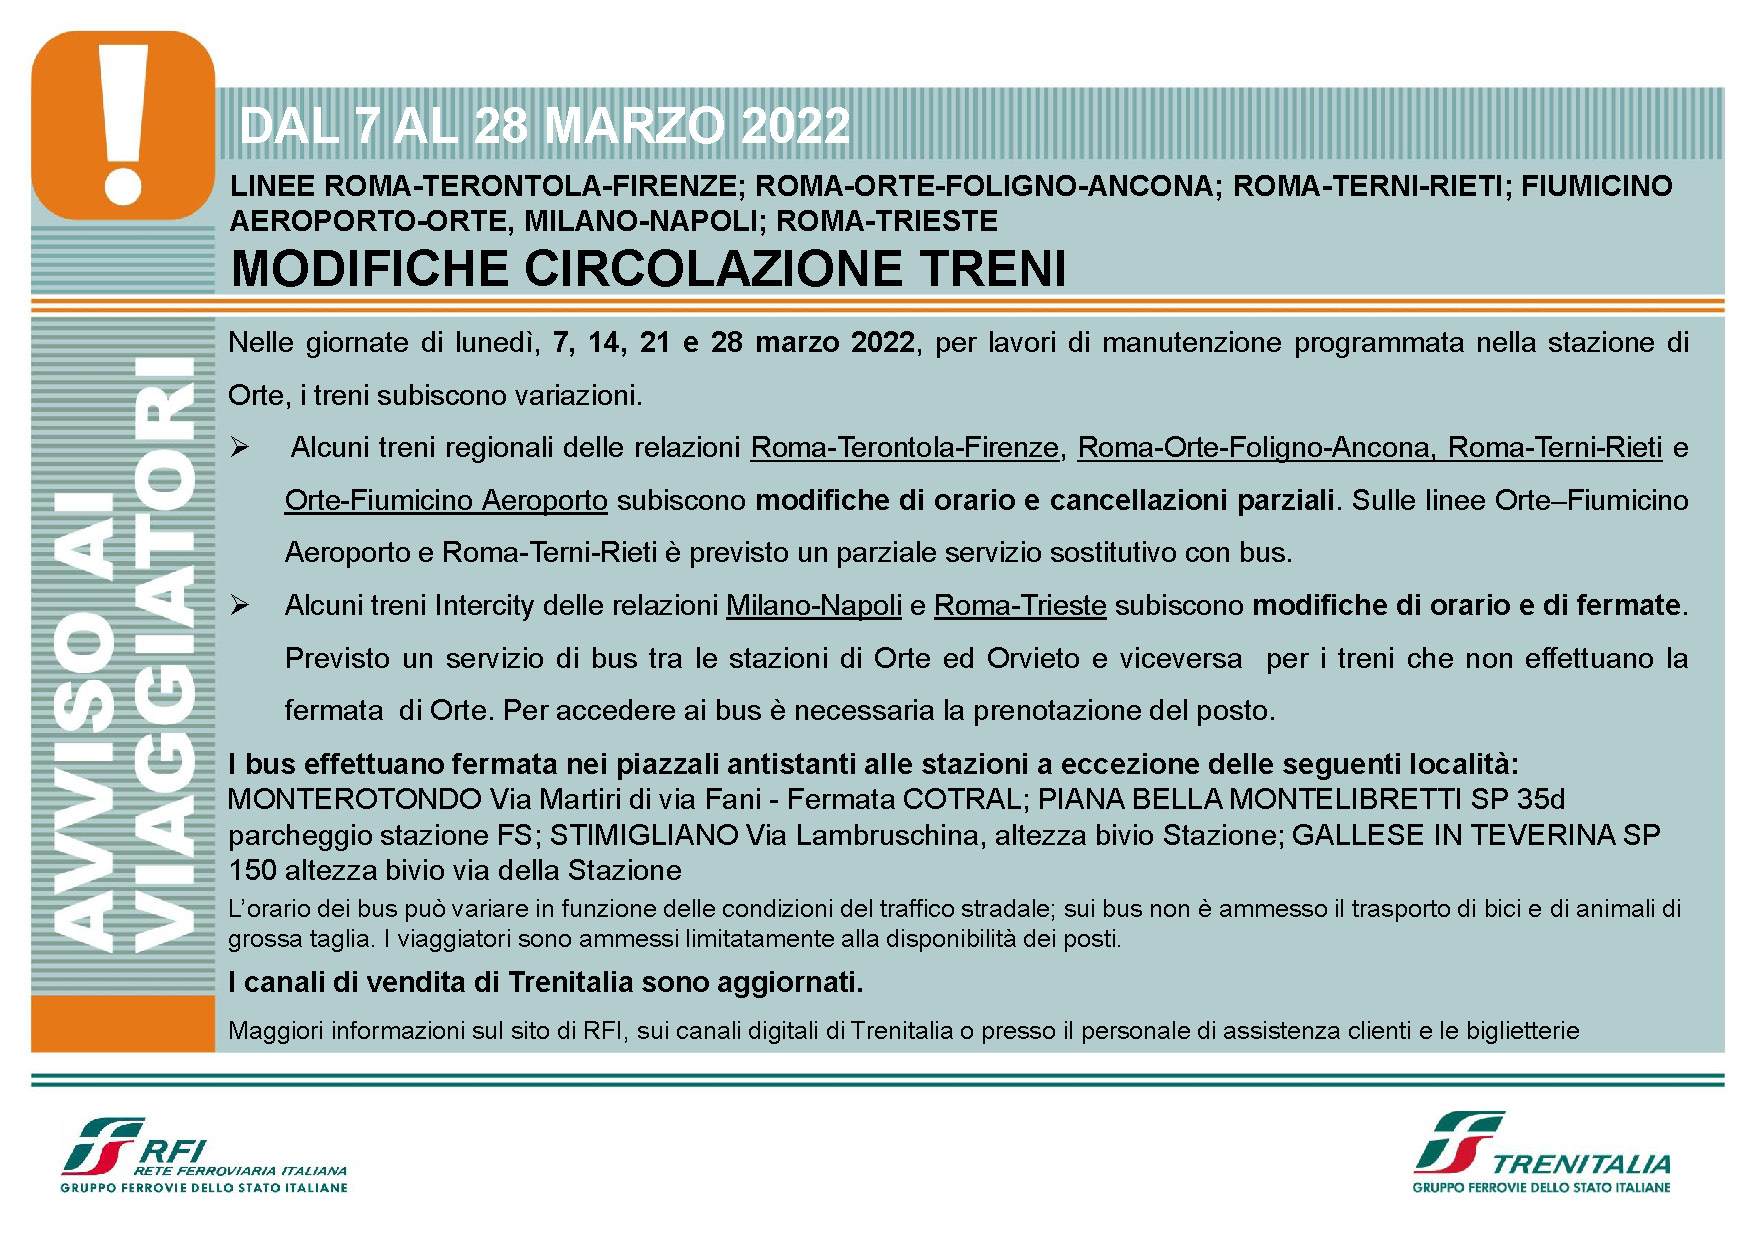 Modifiche circolazione treni dal 7 al 28 marzo 2022